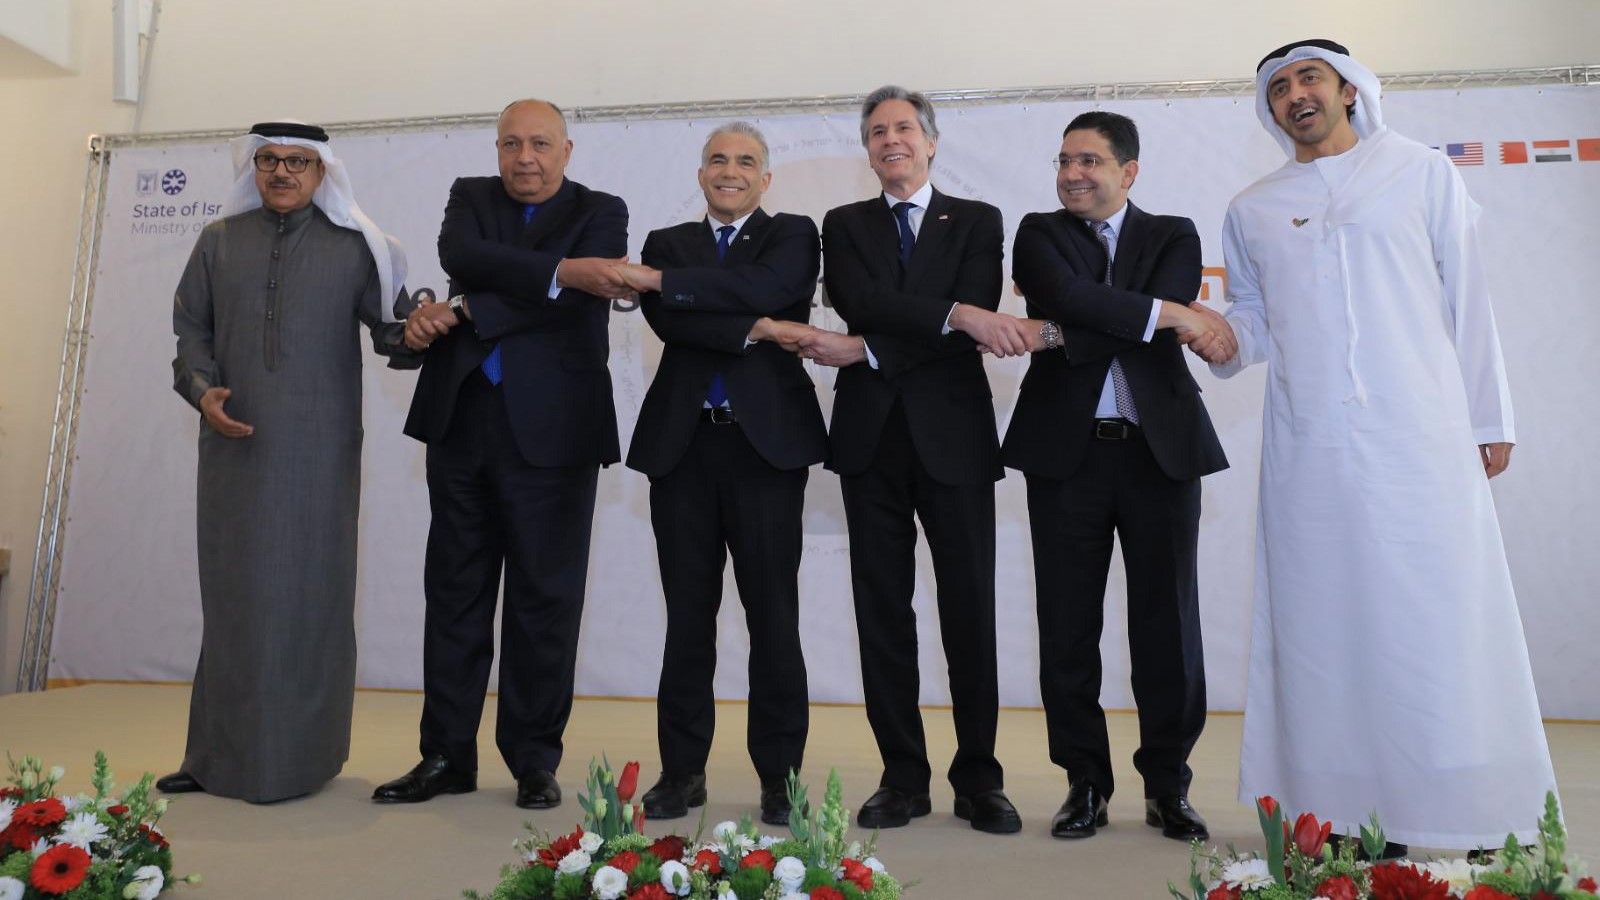 Los ministros de Exteriores de Bahréin, Abdullatif bin Rashid al-Zayani; Egipto, Sameh Shoukry; Israel, Yair Lapid; el secretario de Estado de EEUU, Antony Blinken; el titular de Exteriores de Marruecos, Nasser Bourita; y el de Emiratos Árabes Unidos, Abdullah bin Zayed al-Nahyan.